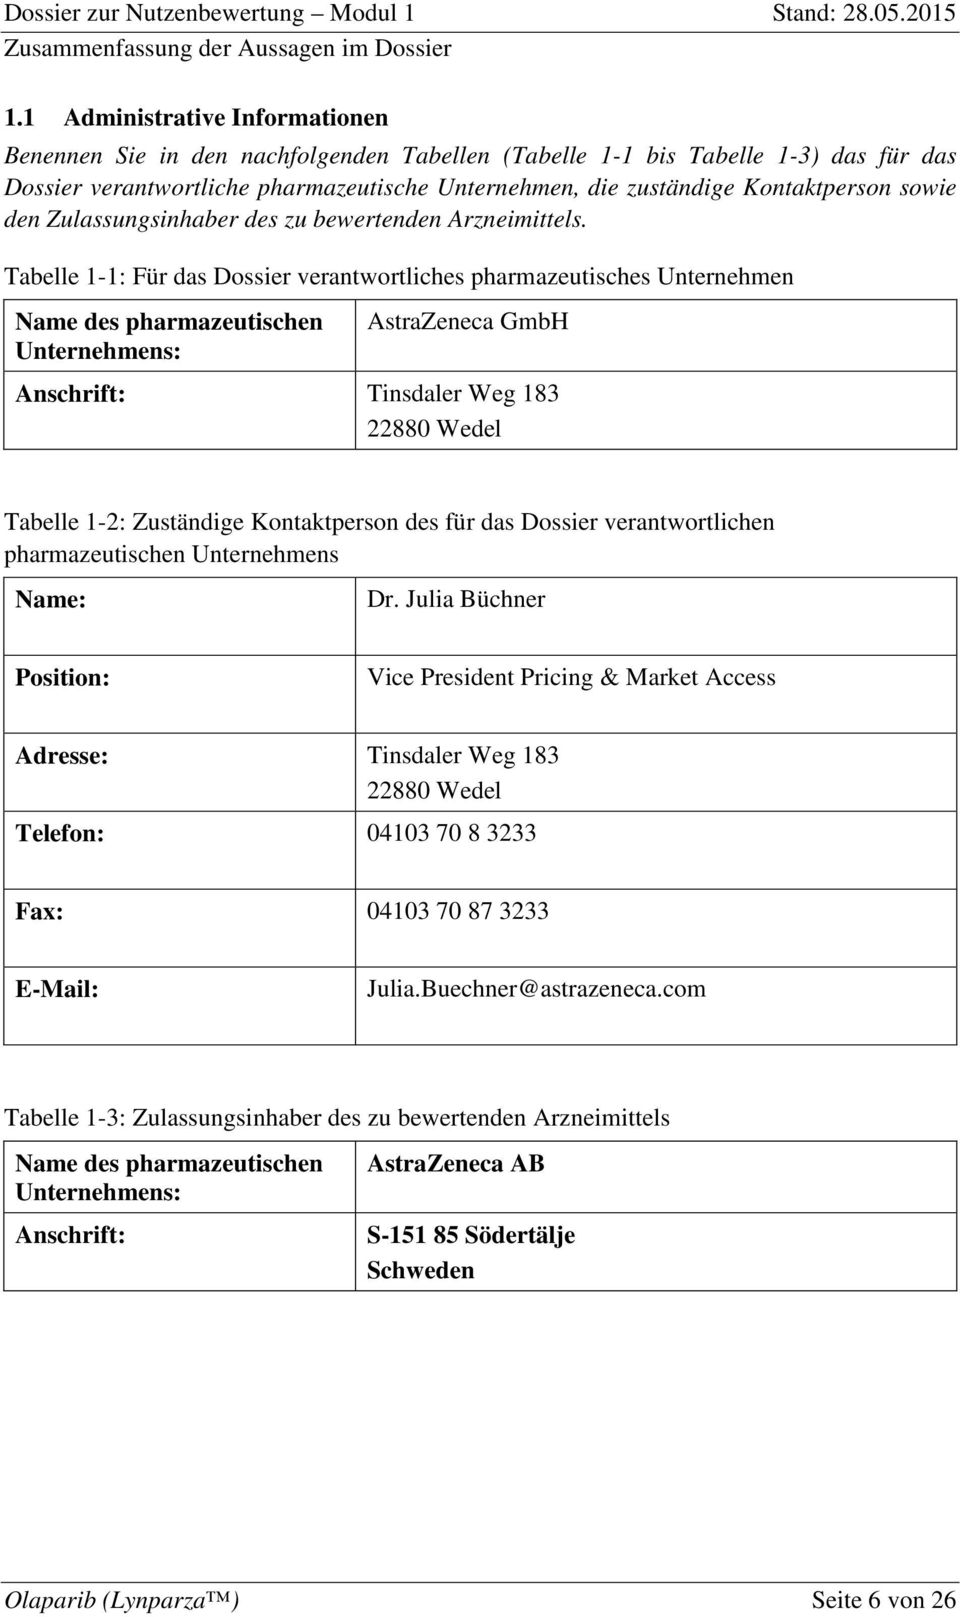 Tabelle 1-1: Für das Dossier verantwortliches pharmazeutisches Unternehmen Name des pharmazeutischen Unternehmens: AstraZeneca GmbH Anschrift: Tinsdaler Weg 183 22880 Wedel Tabelle 1-2: Zuständige